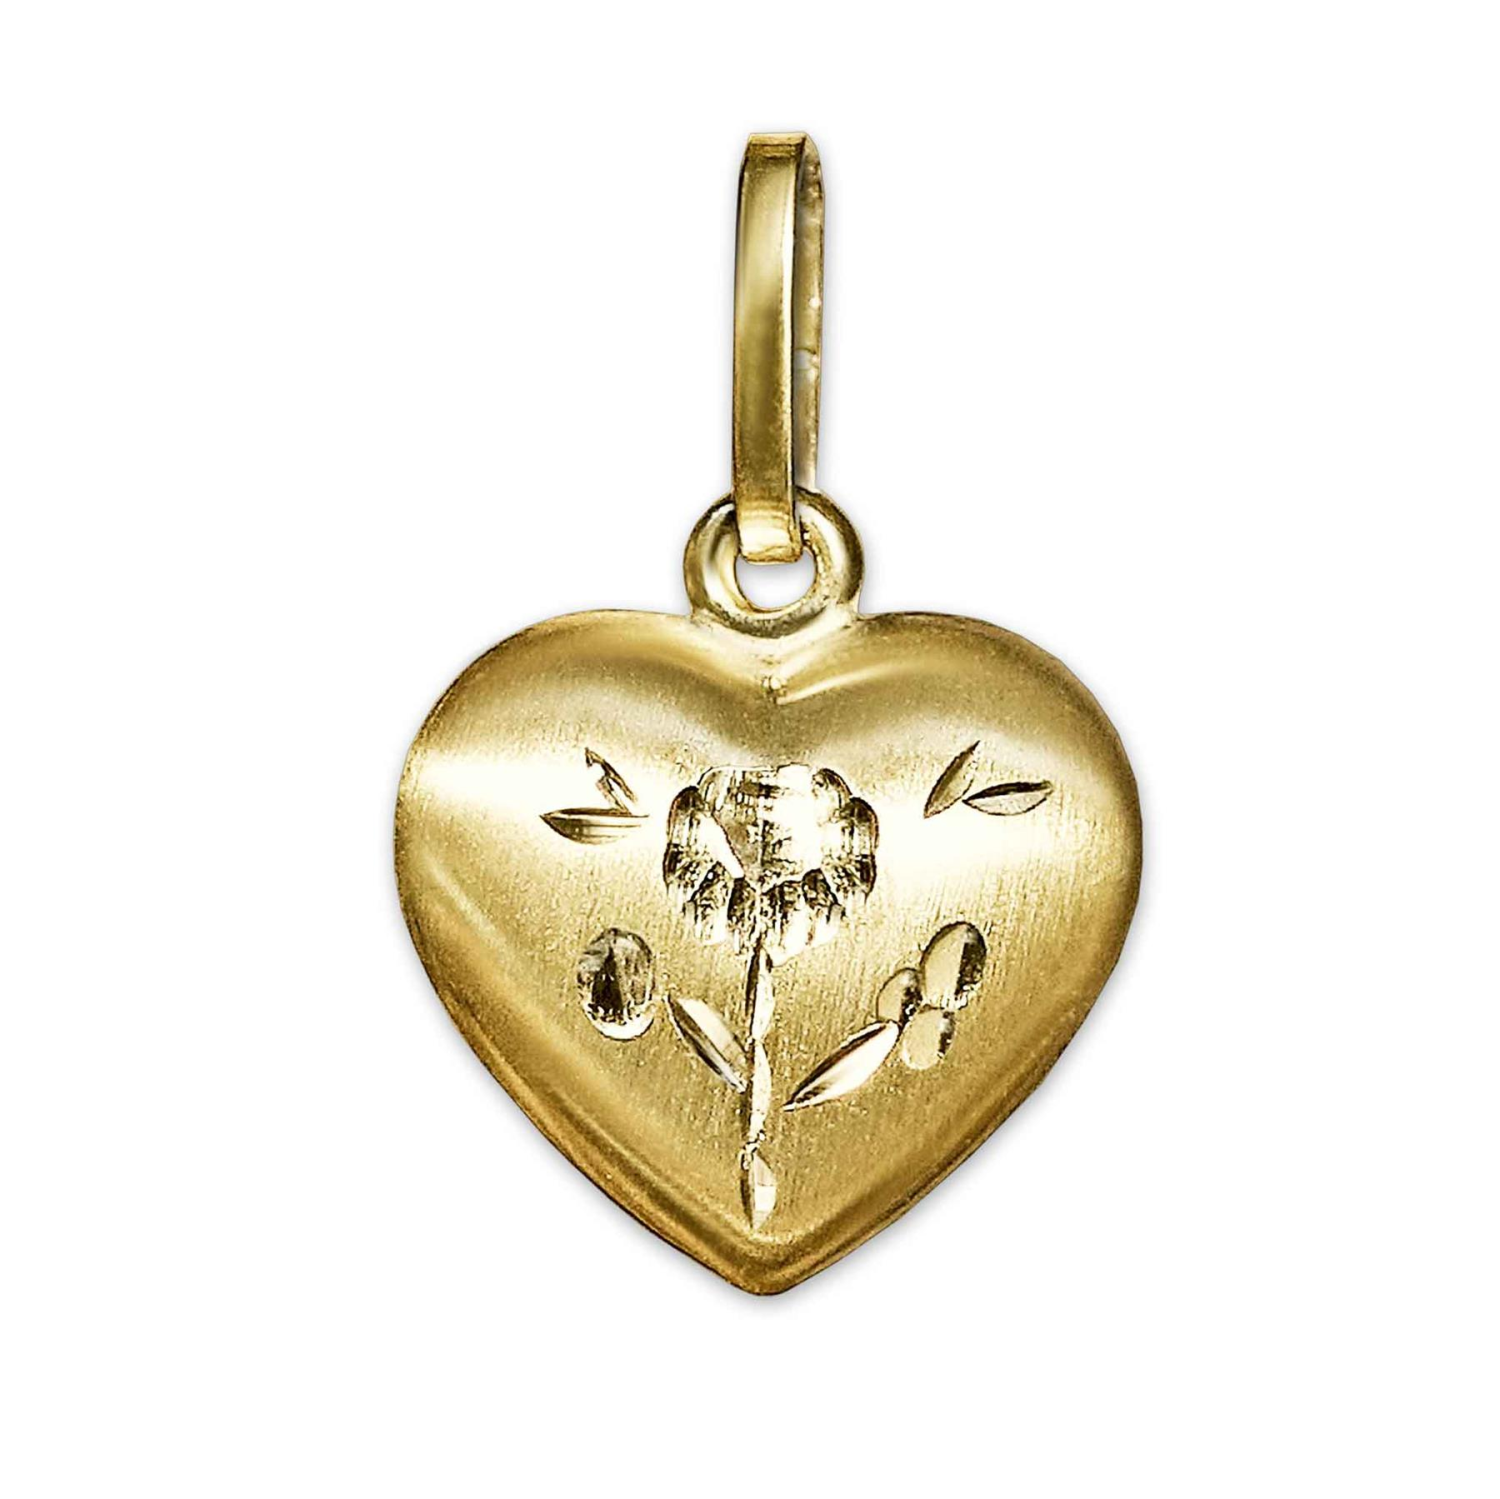 Goldener Anhänger Herz 9 mm eine Seite seidenmatt mit Blume diamantiert verziert, andere glänzend 333 GOLD 8 KARAT